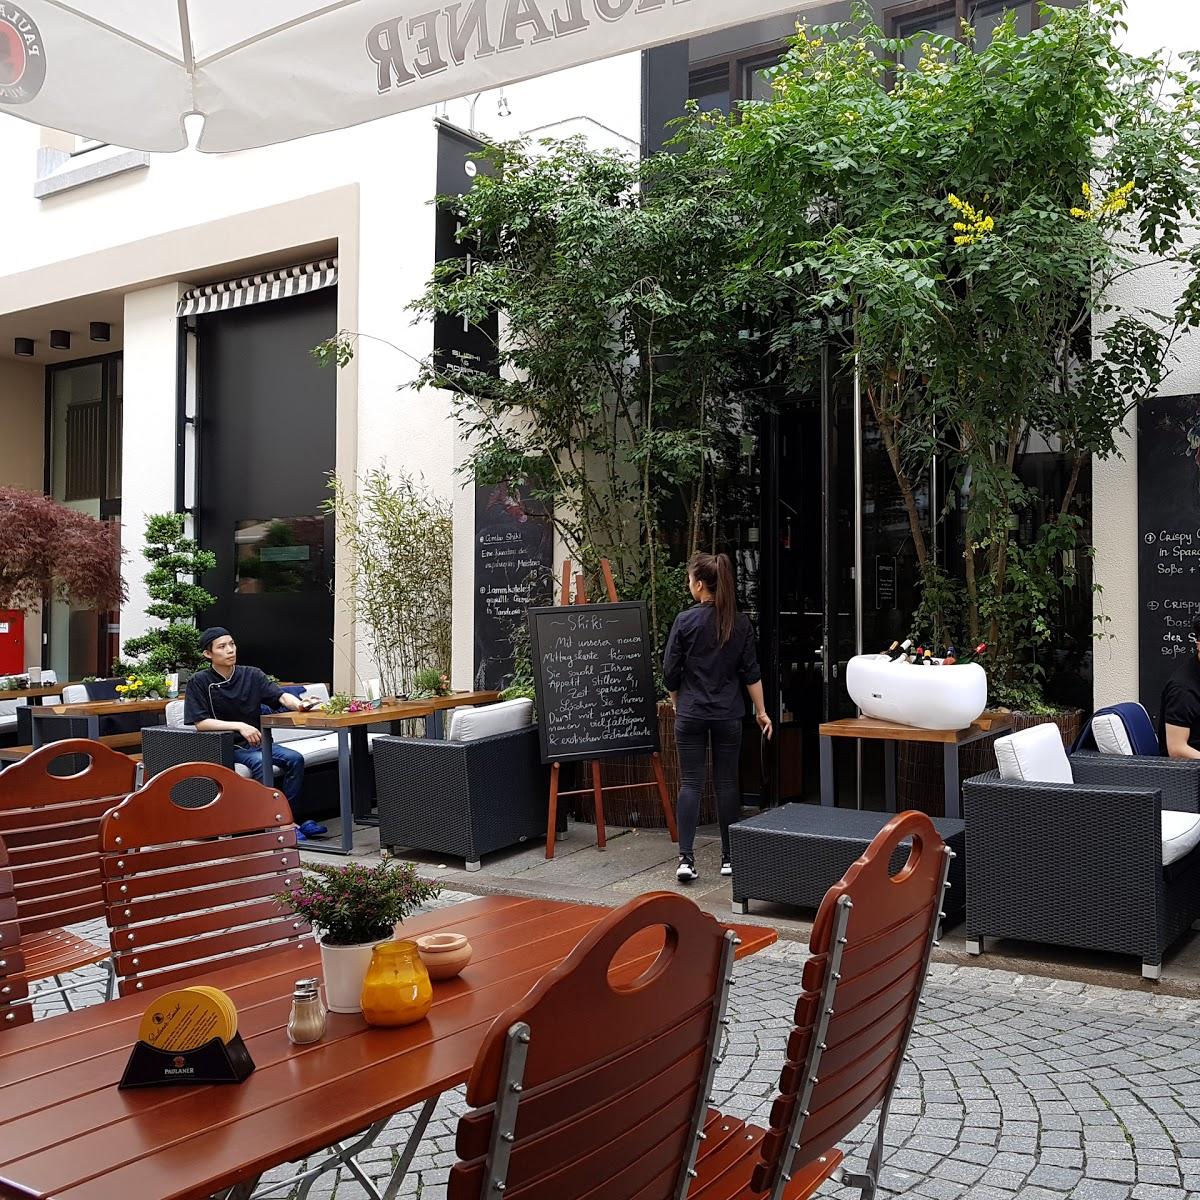 Restaurant "SHIKI - Klostergasse 18" in Leipzig